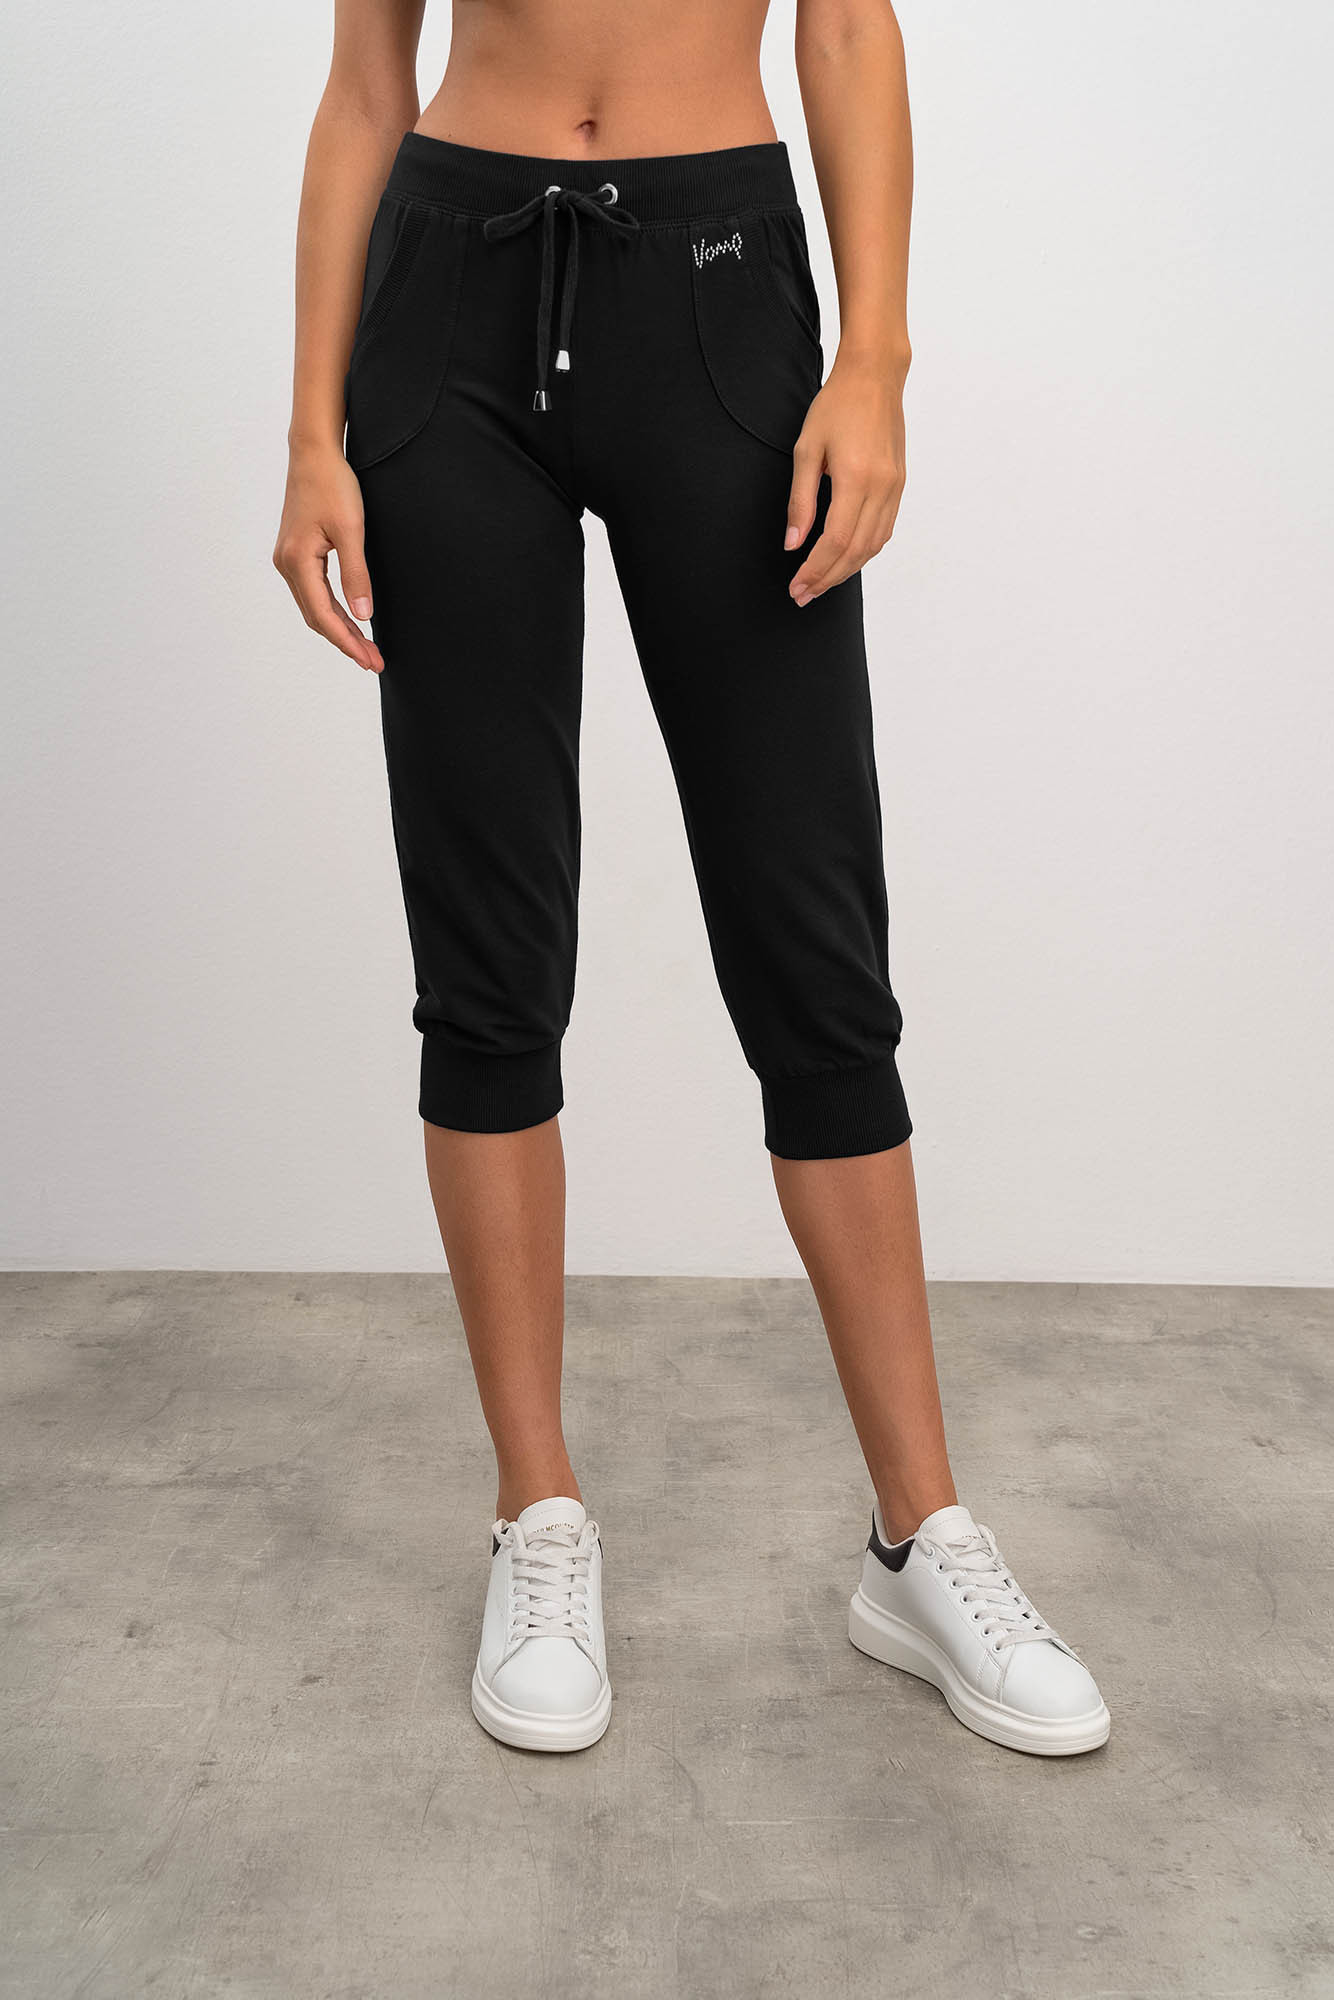 Vamp - Pohodlné dámské teplákové kalhoty 18375 - Vamp black S